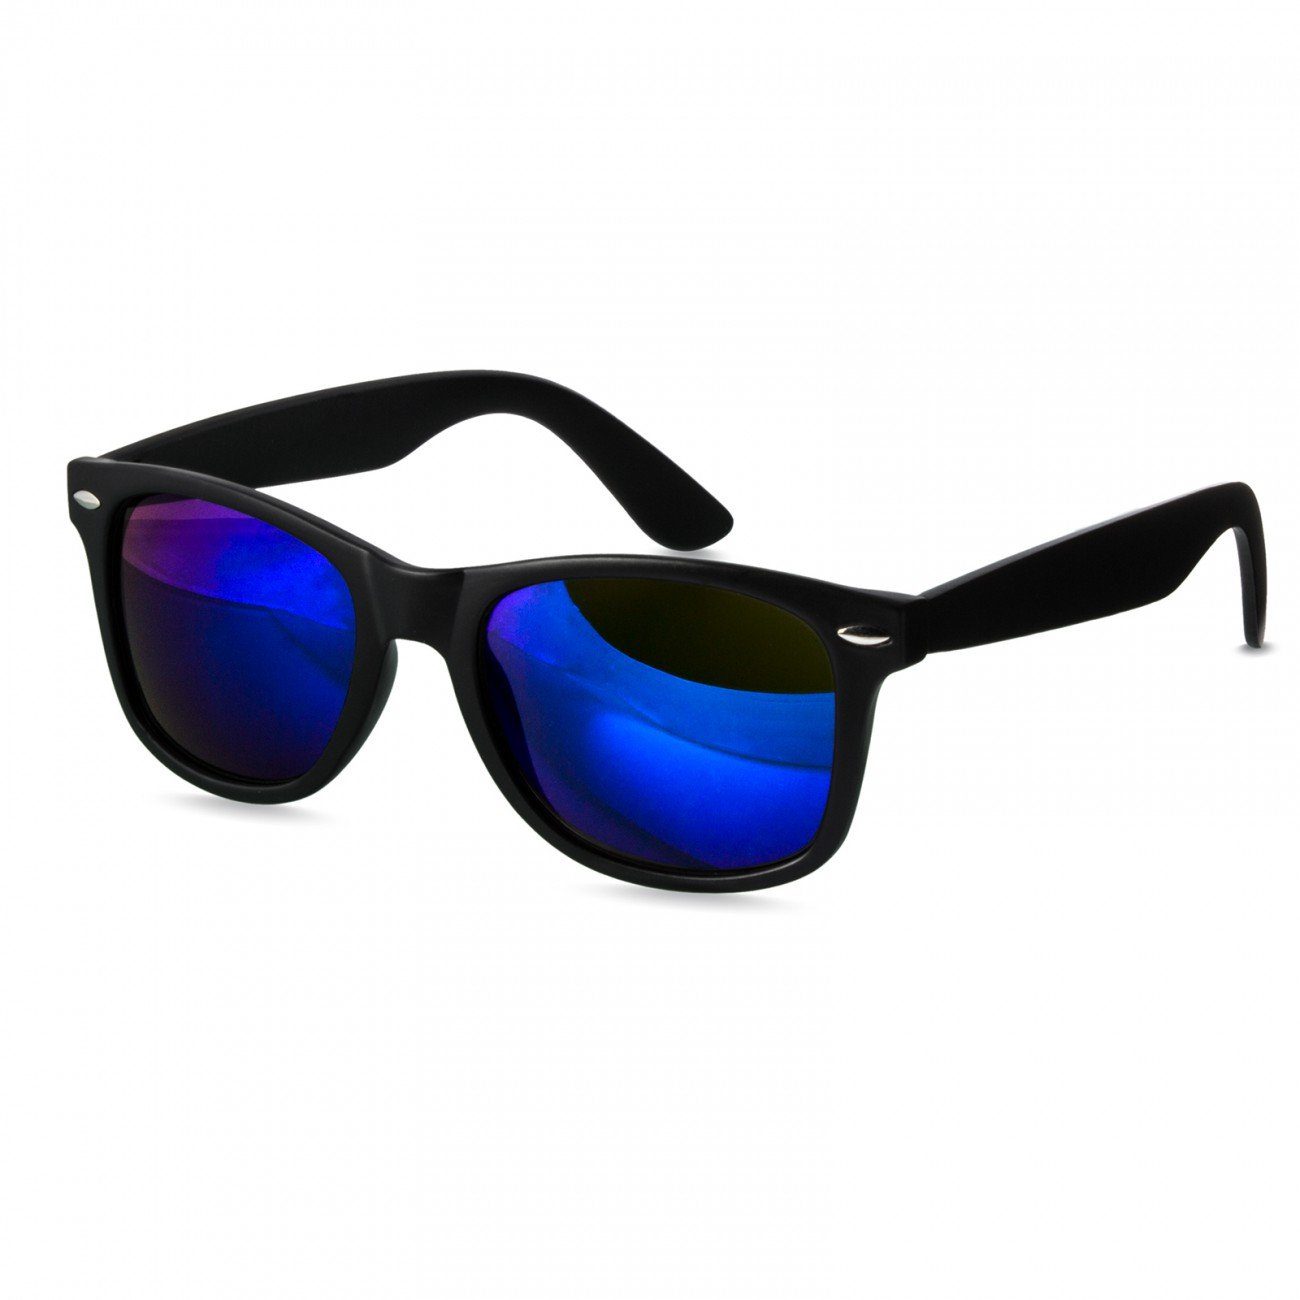 Caspar Sonnenbrille SG017 Damen RETRO Designbrille kpl. matt schwarz / blau verspiegelt